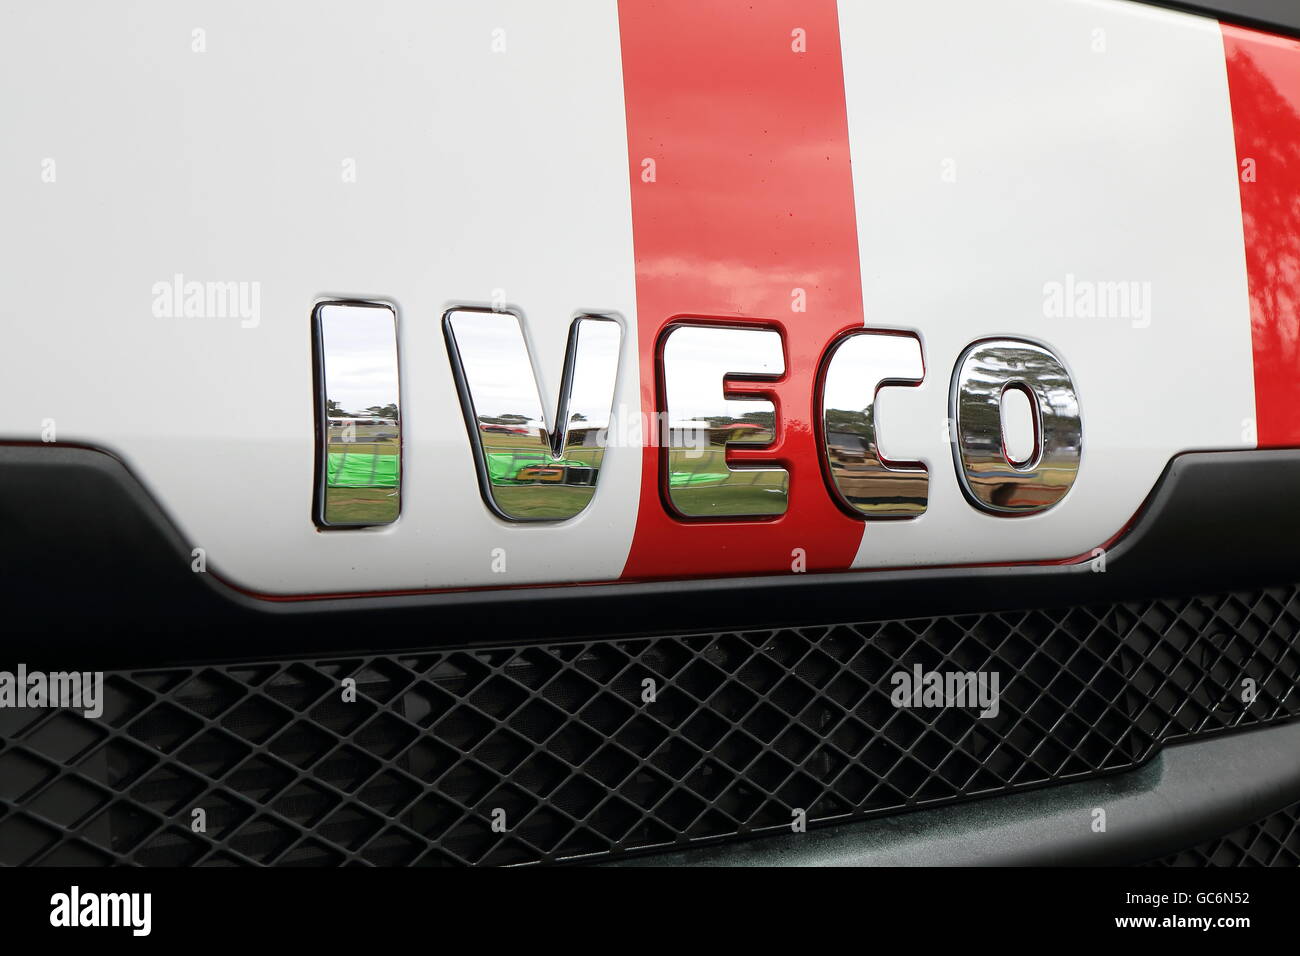 IVECO Automobilhersteller, italienische Industriefahrzeug produzierendes Unternehmen Stockfoto